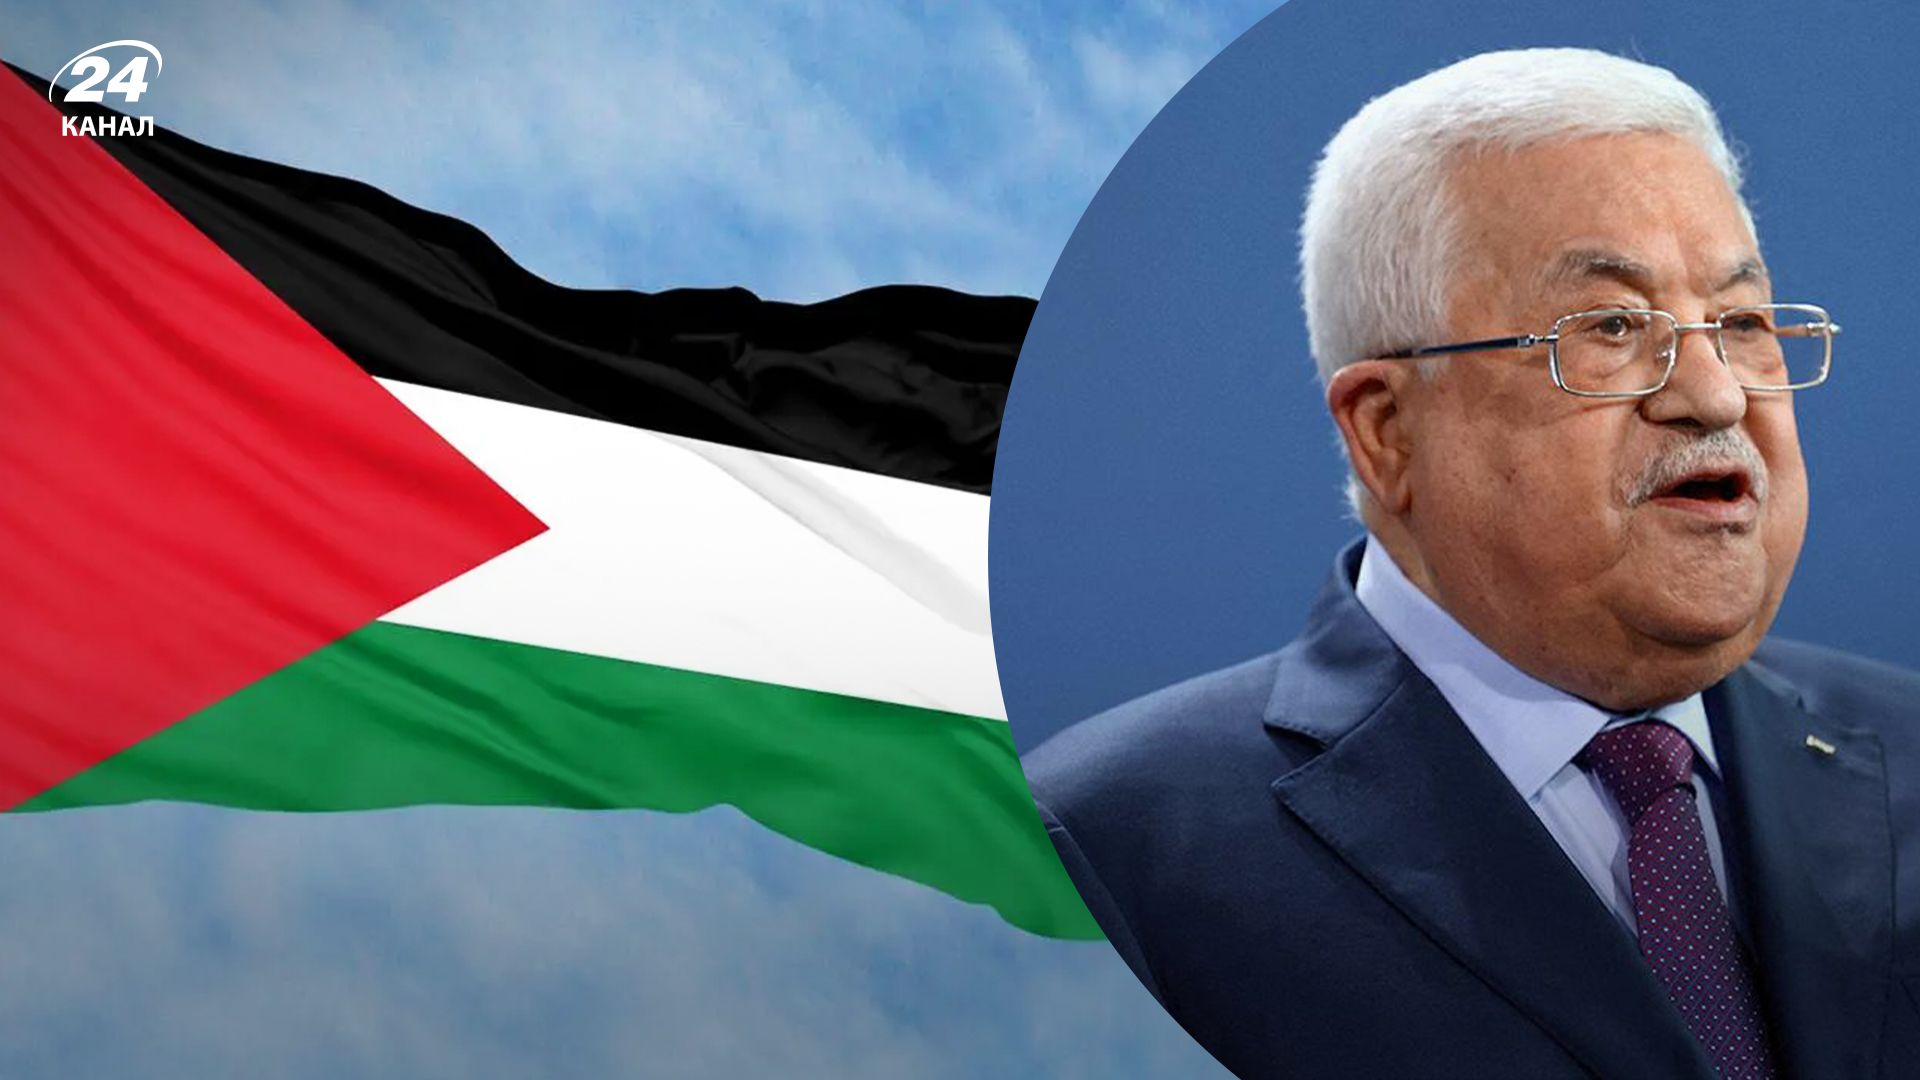 Палестина хочет провести выборы на территориях, включая Сектор Газа и Иерусалим.